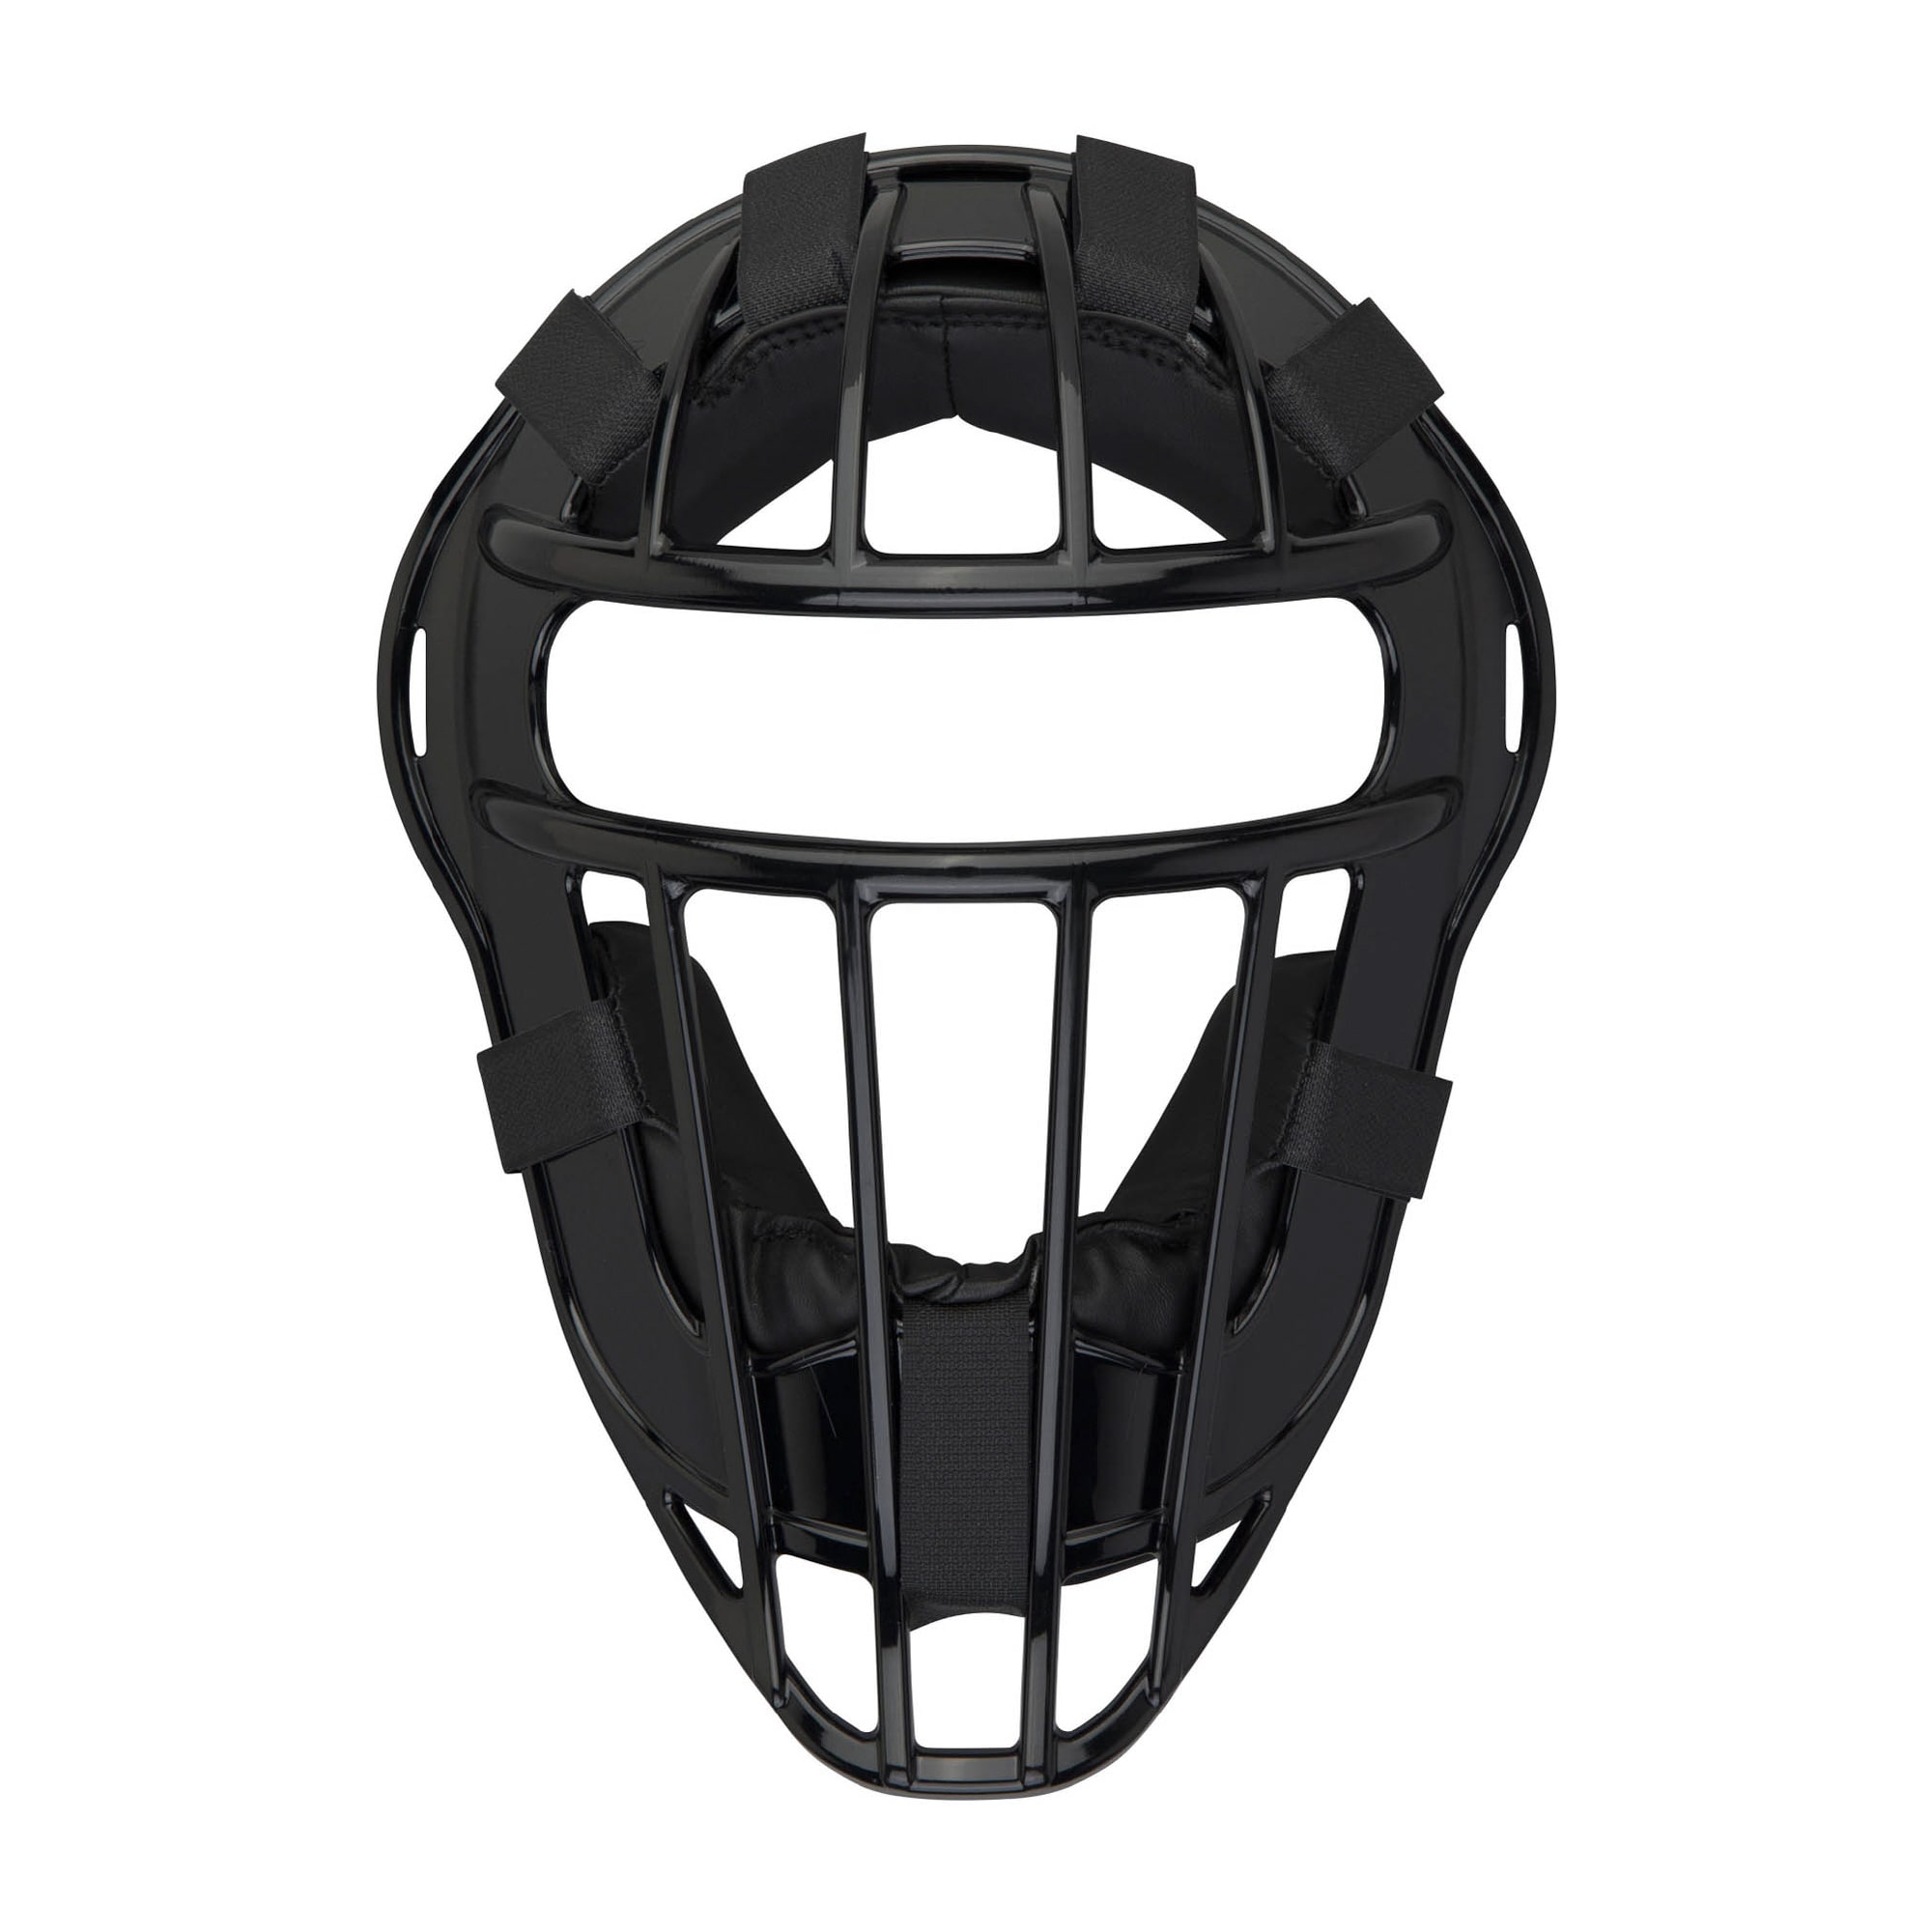 ヘルメットの種類キャッチャー用ソフトボール用マスク - 防具